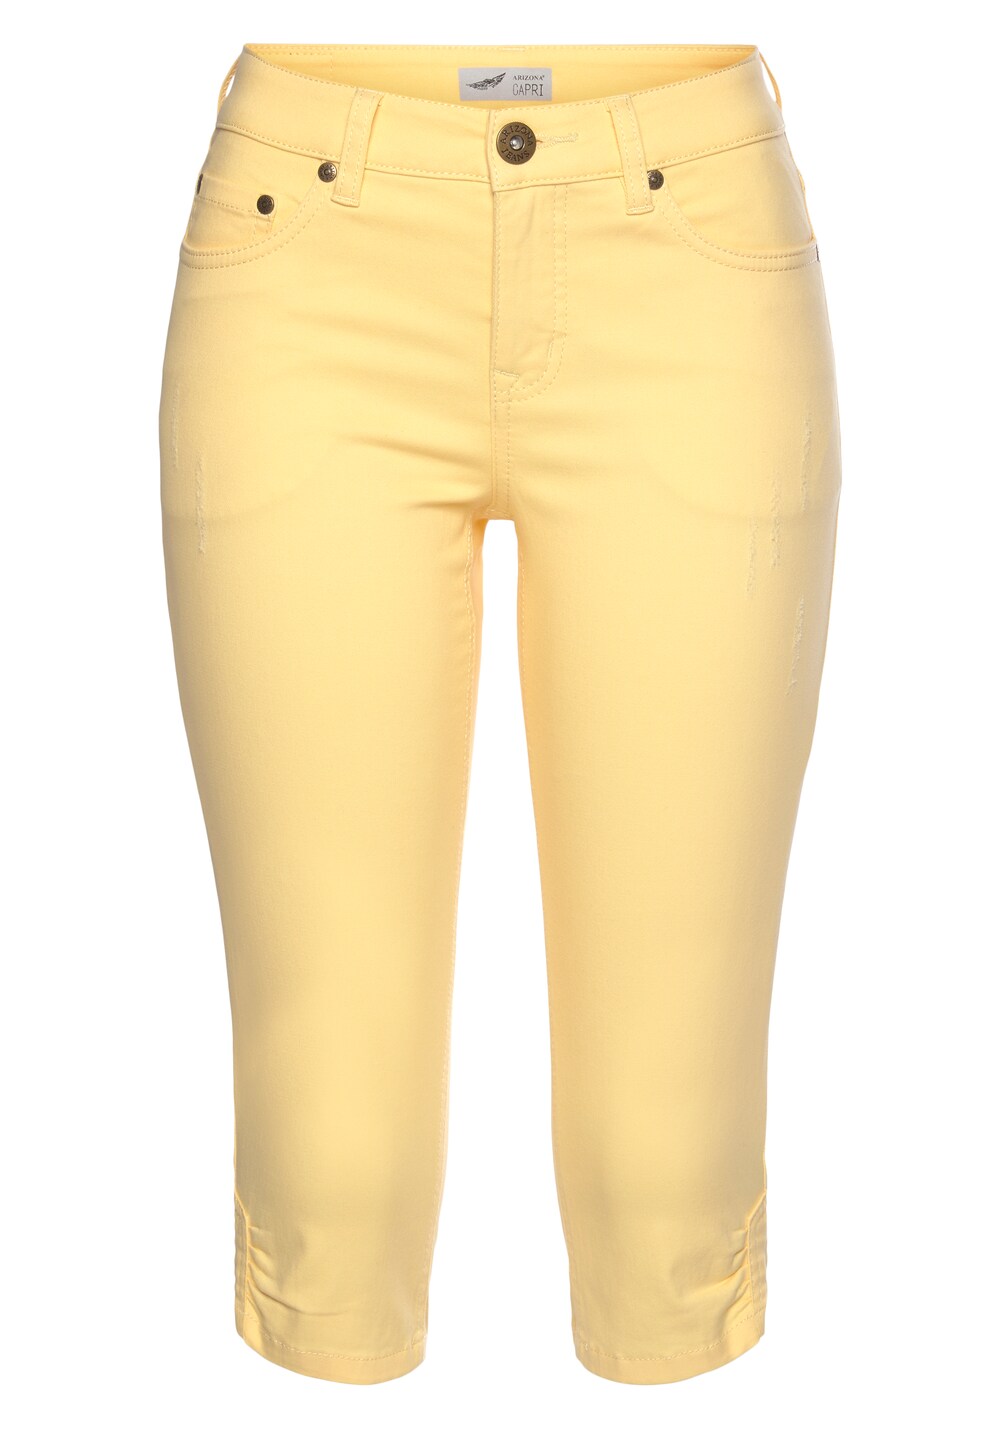 Узкие джинсы Arizona, желтый